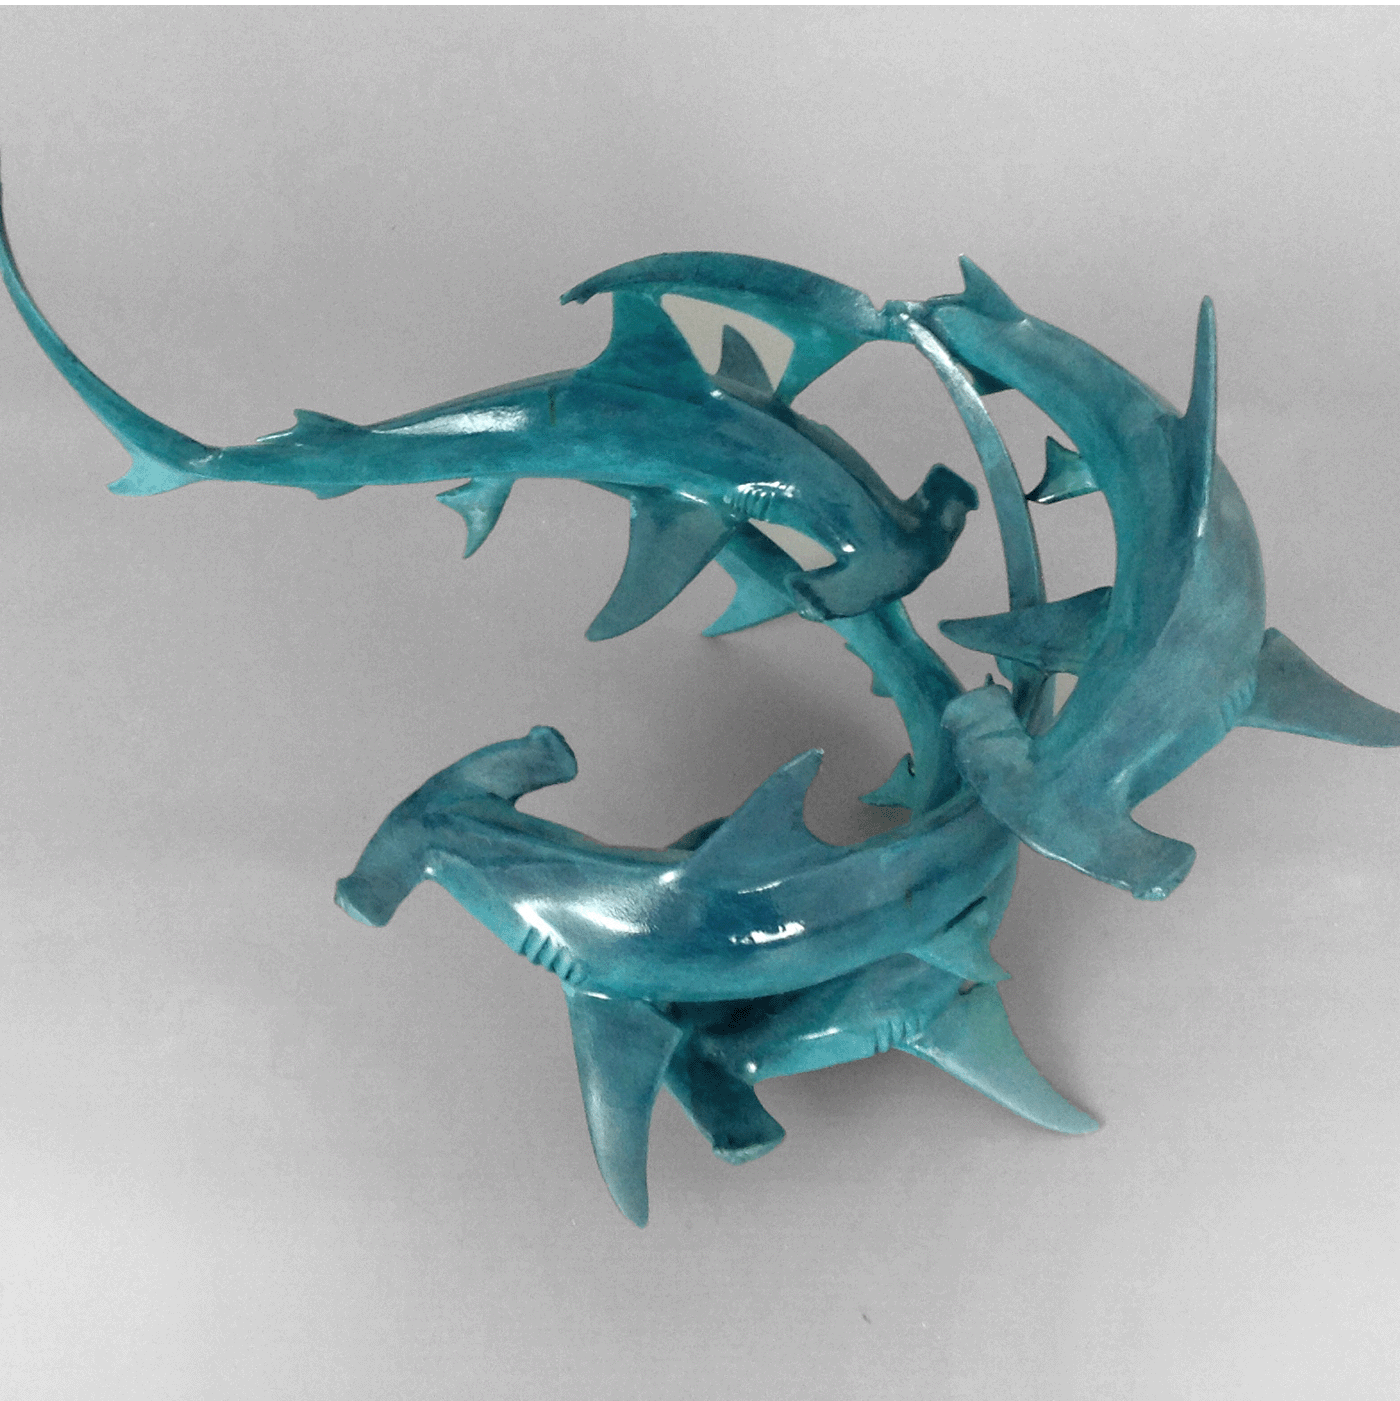 Bronze hammerhead shark sculpture